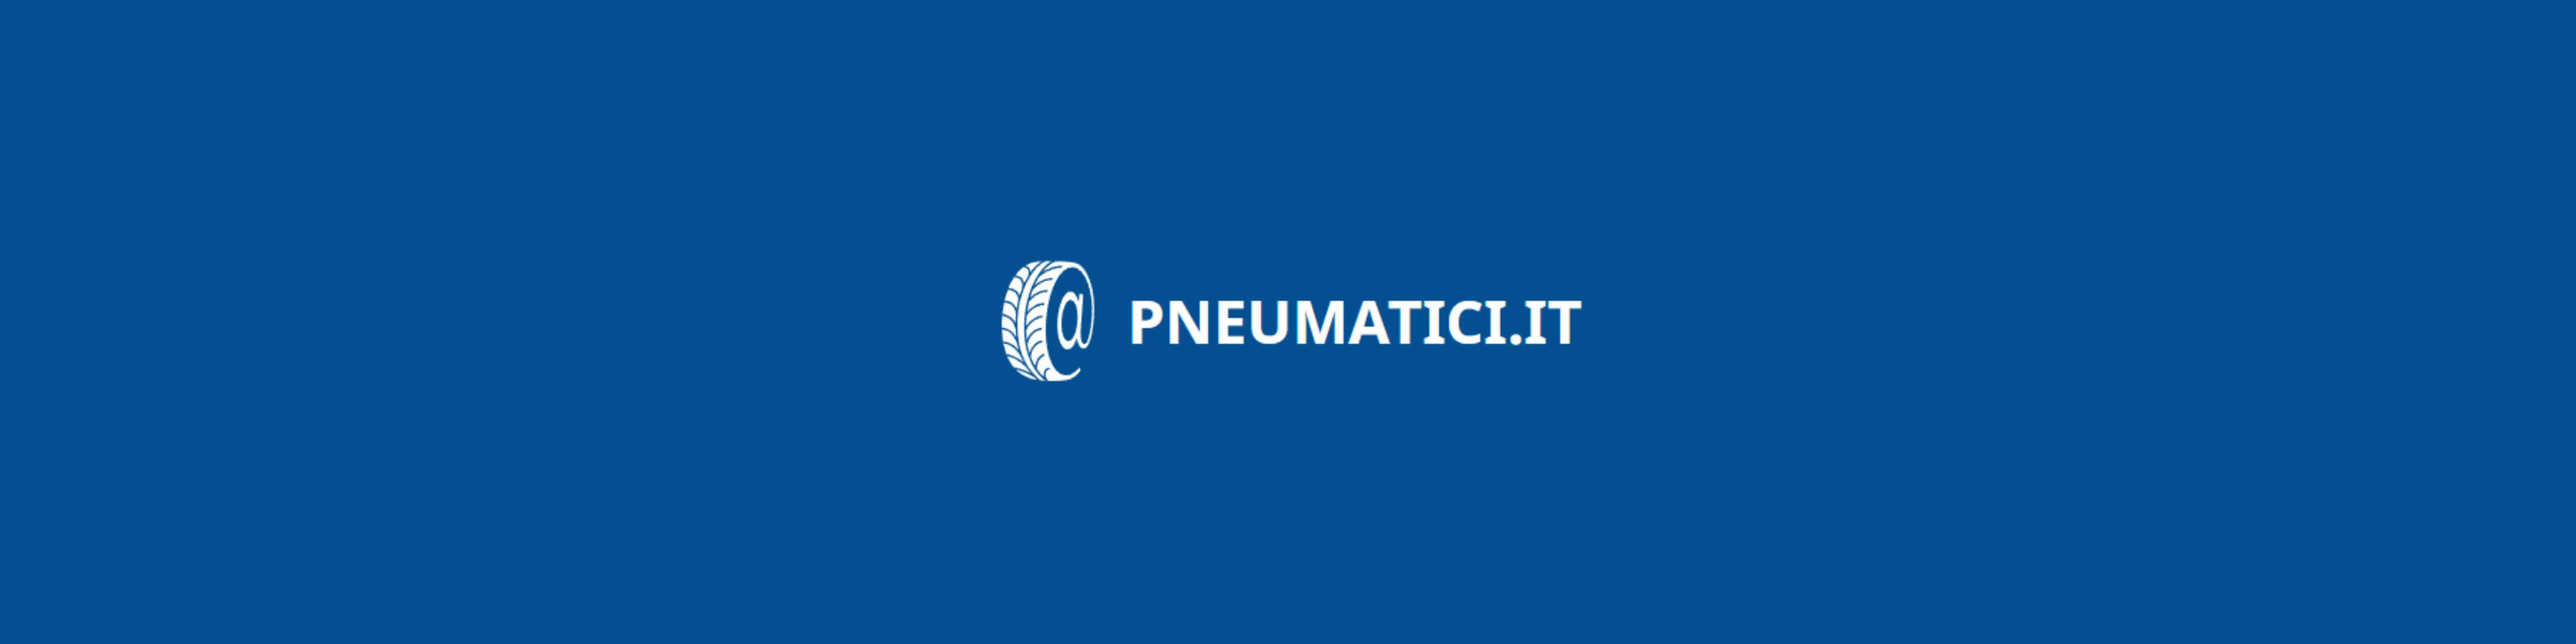 Pneumatici.it (In promozione)